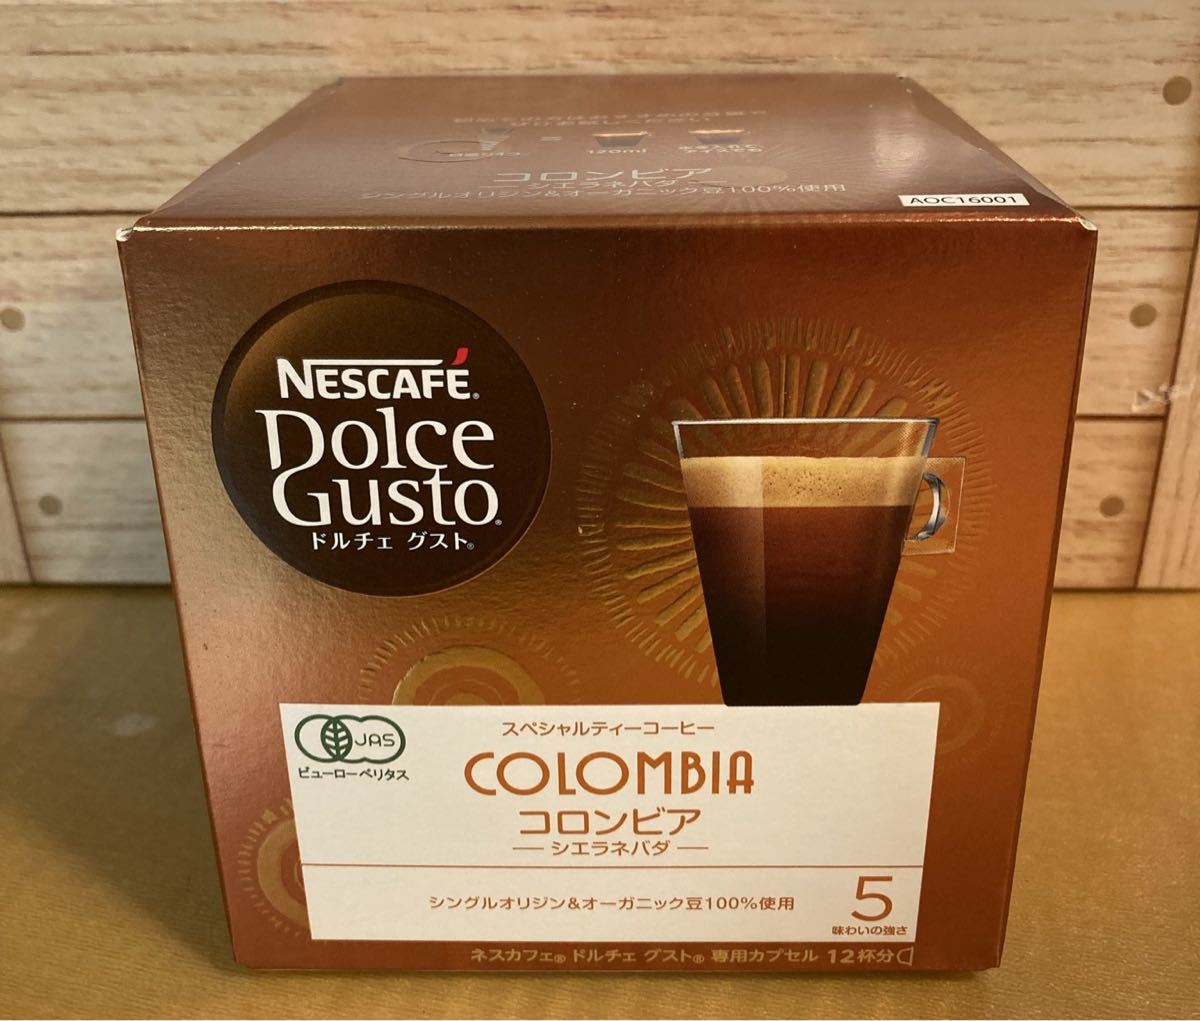 ３箱セット ドルチェグスト コロンビア シエラネバダ ネスカフェ NESCAFEポイントQRコード付き コーヒー